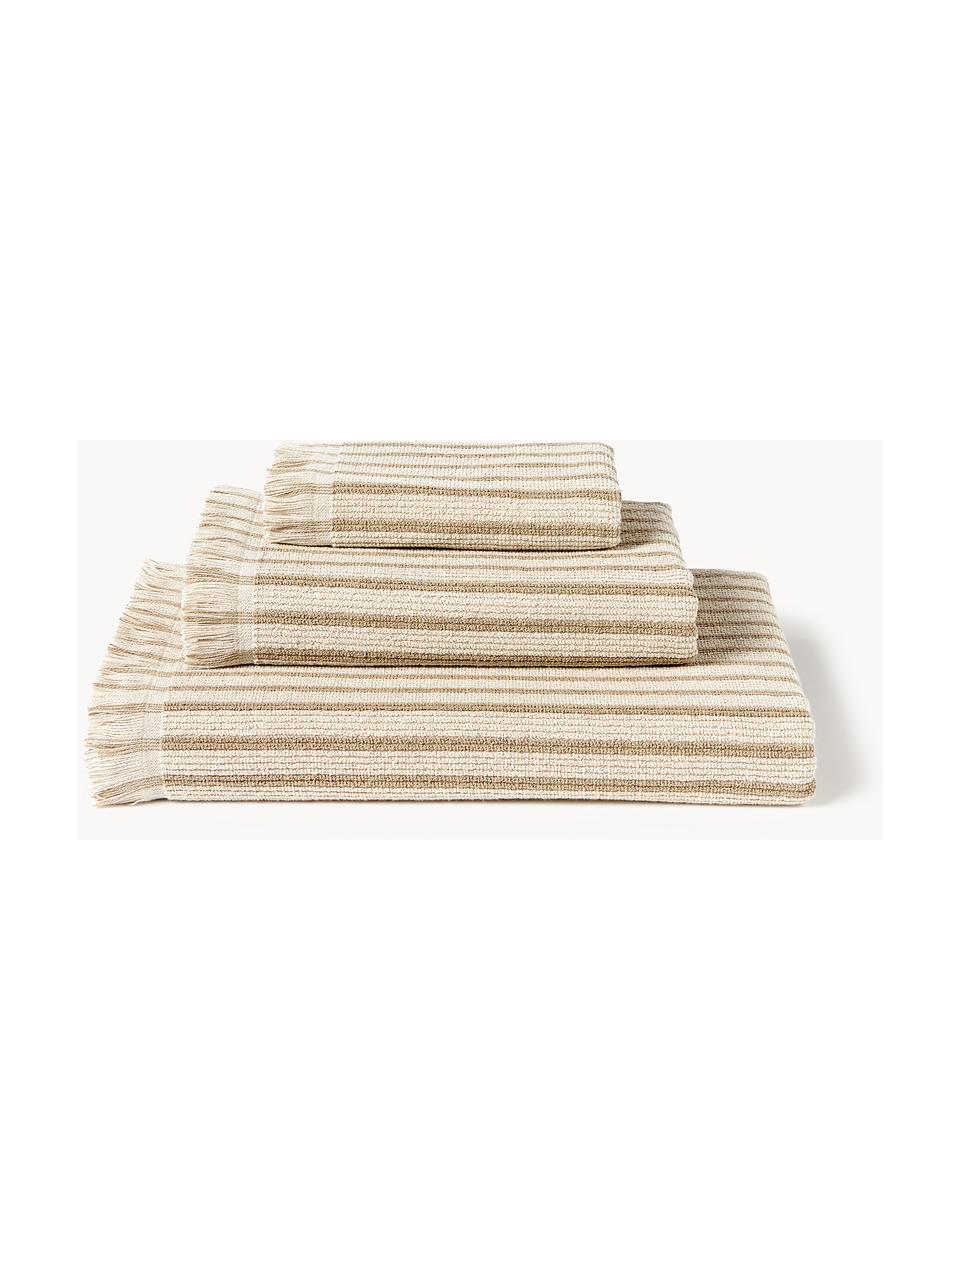 Serviettes de toilette Irma, tailles variées, Beige, 4 pièces (2 serviettes de toilette et 2 draps de bain)